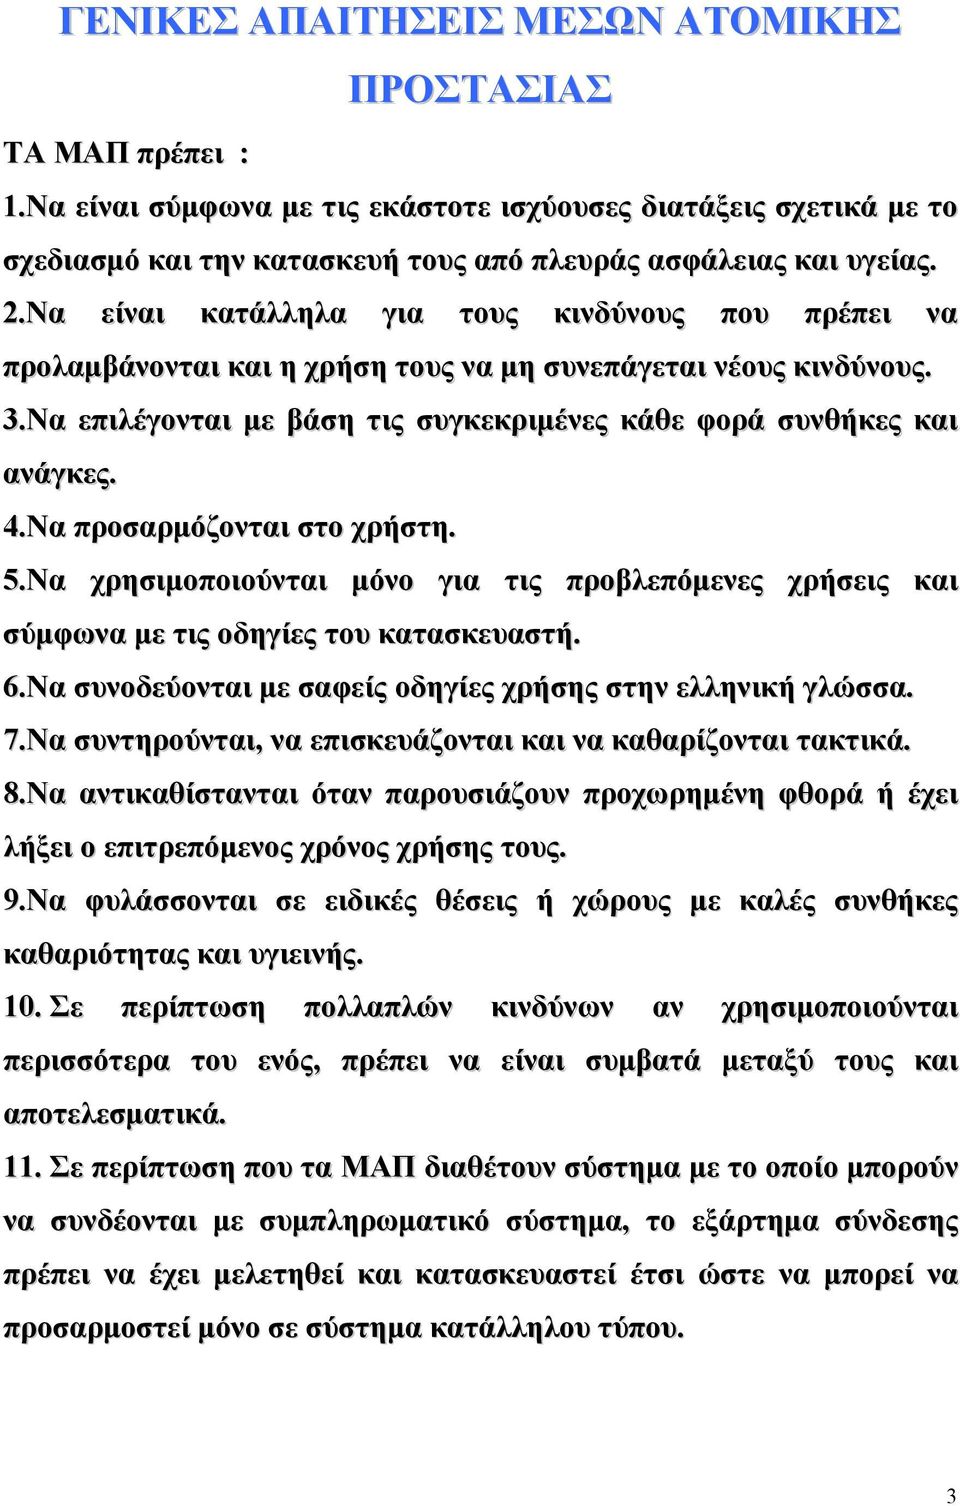 Να προσαρµόζονται στο χρήστη. 5.Να χρησιµοποιούνται µόνο για τις προβλεπόµενες χρήσεις και σύµφωνα µε τις οδηγίες του κατασκευαστή. 6.Να συνοδεύονται µε σαφείς οδηγίες χρήσης στην ελληνική γλώσσα. 7.